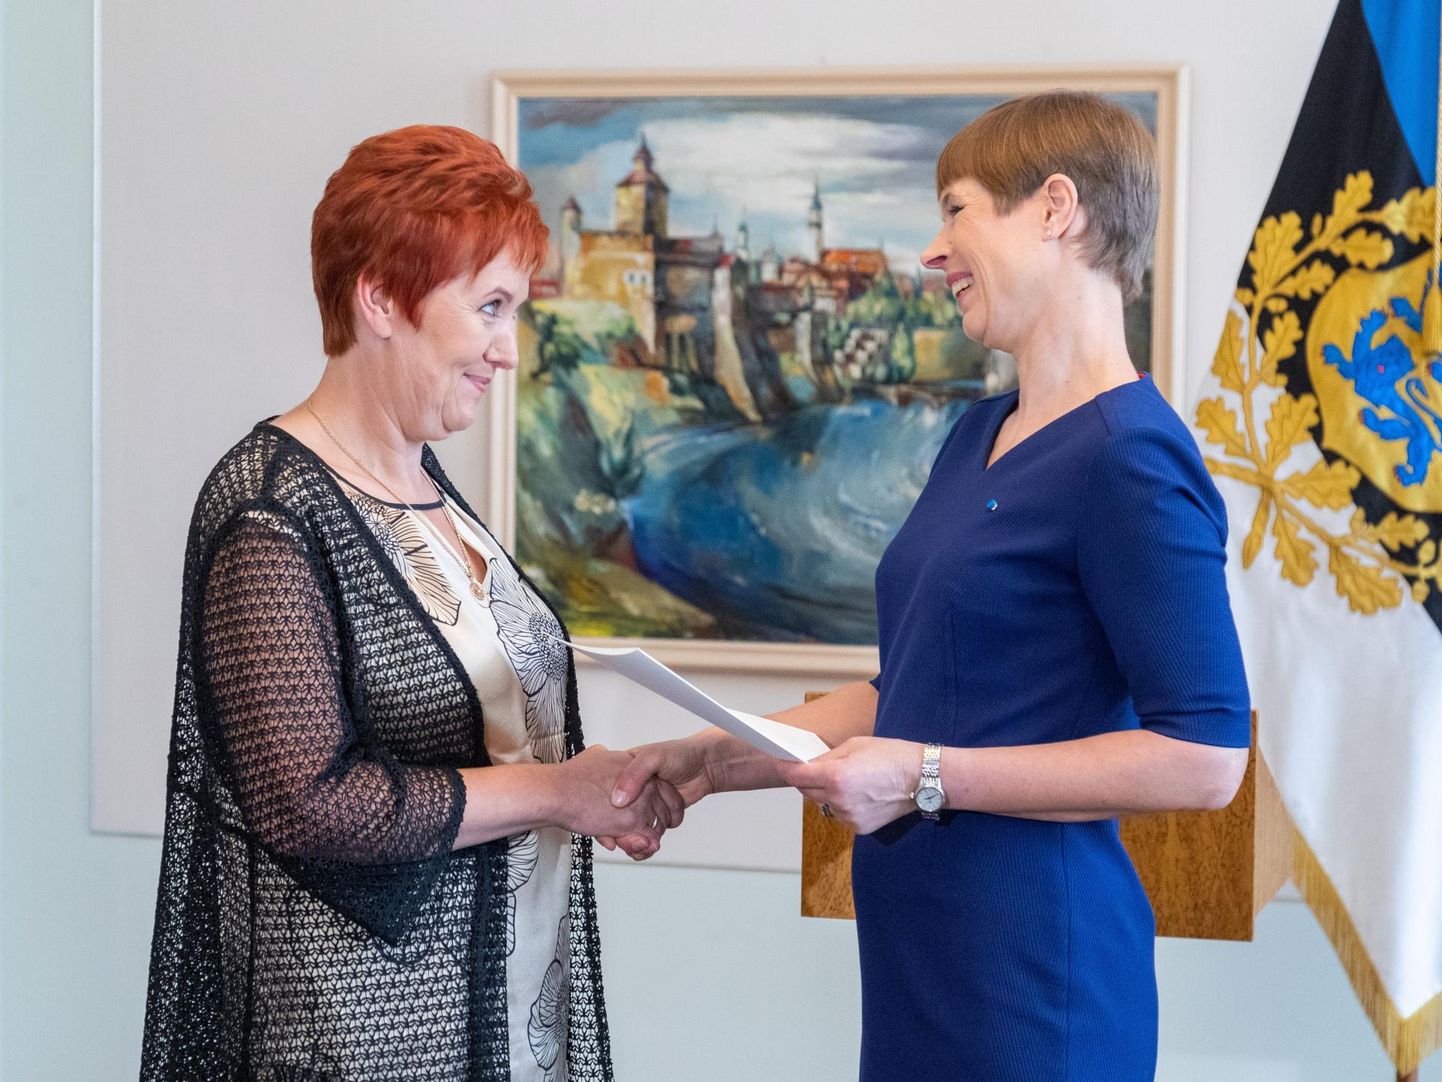 Möödunud aasta juunikuus andis presidendi kultuurirahastu sotsiaaltööpreemia sõltuvushaigete ravi- ja rehabilitatsioonikeskusele. Vasakul on keskuse juht Rita Kerdmann ning paremal president Kersti Kaljulaid.